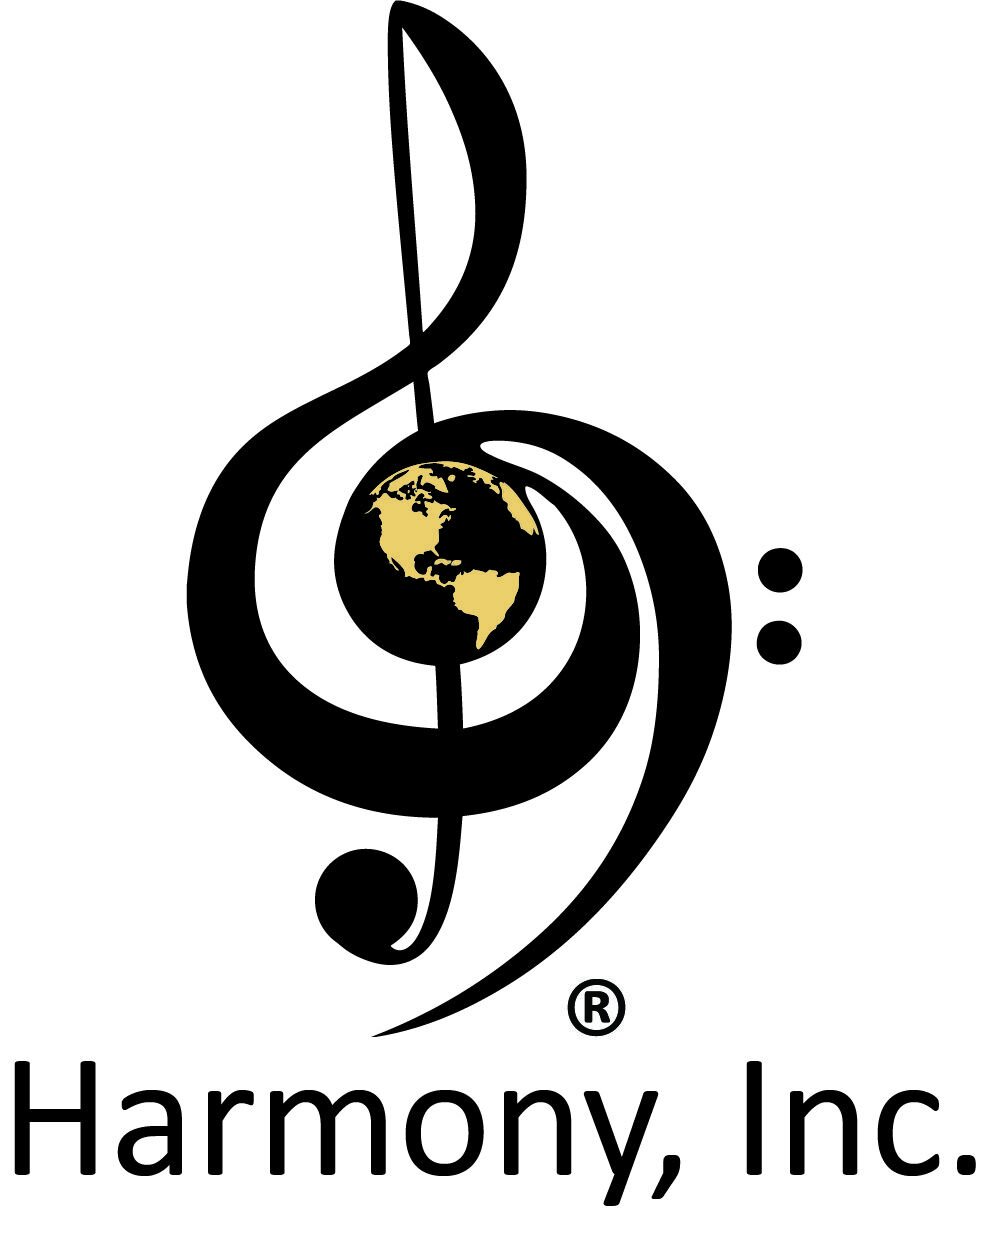 harmony-inc_processed_8c3d0a8a8bf1d9fb93a09198a2b2f1b4ea989b915c1322611a35f10a452fede5_logo.jpeg